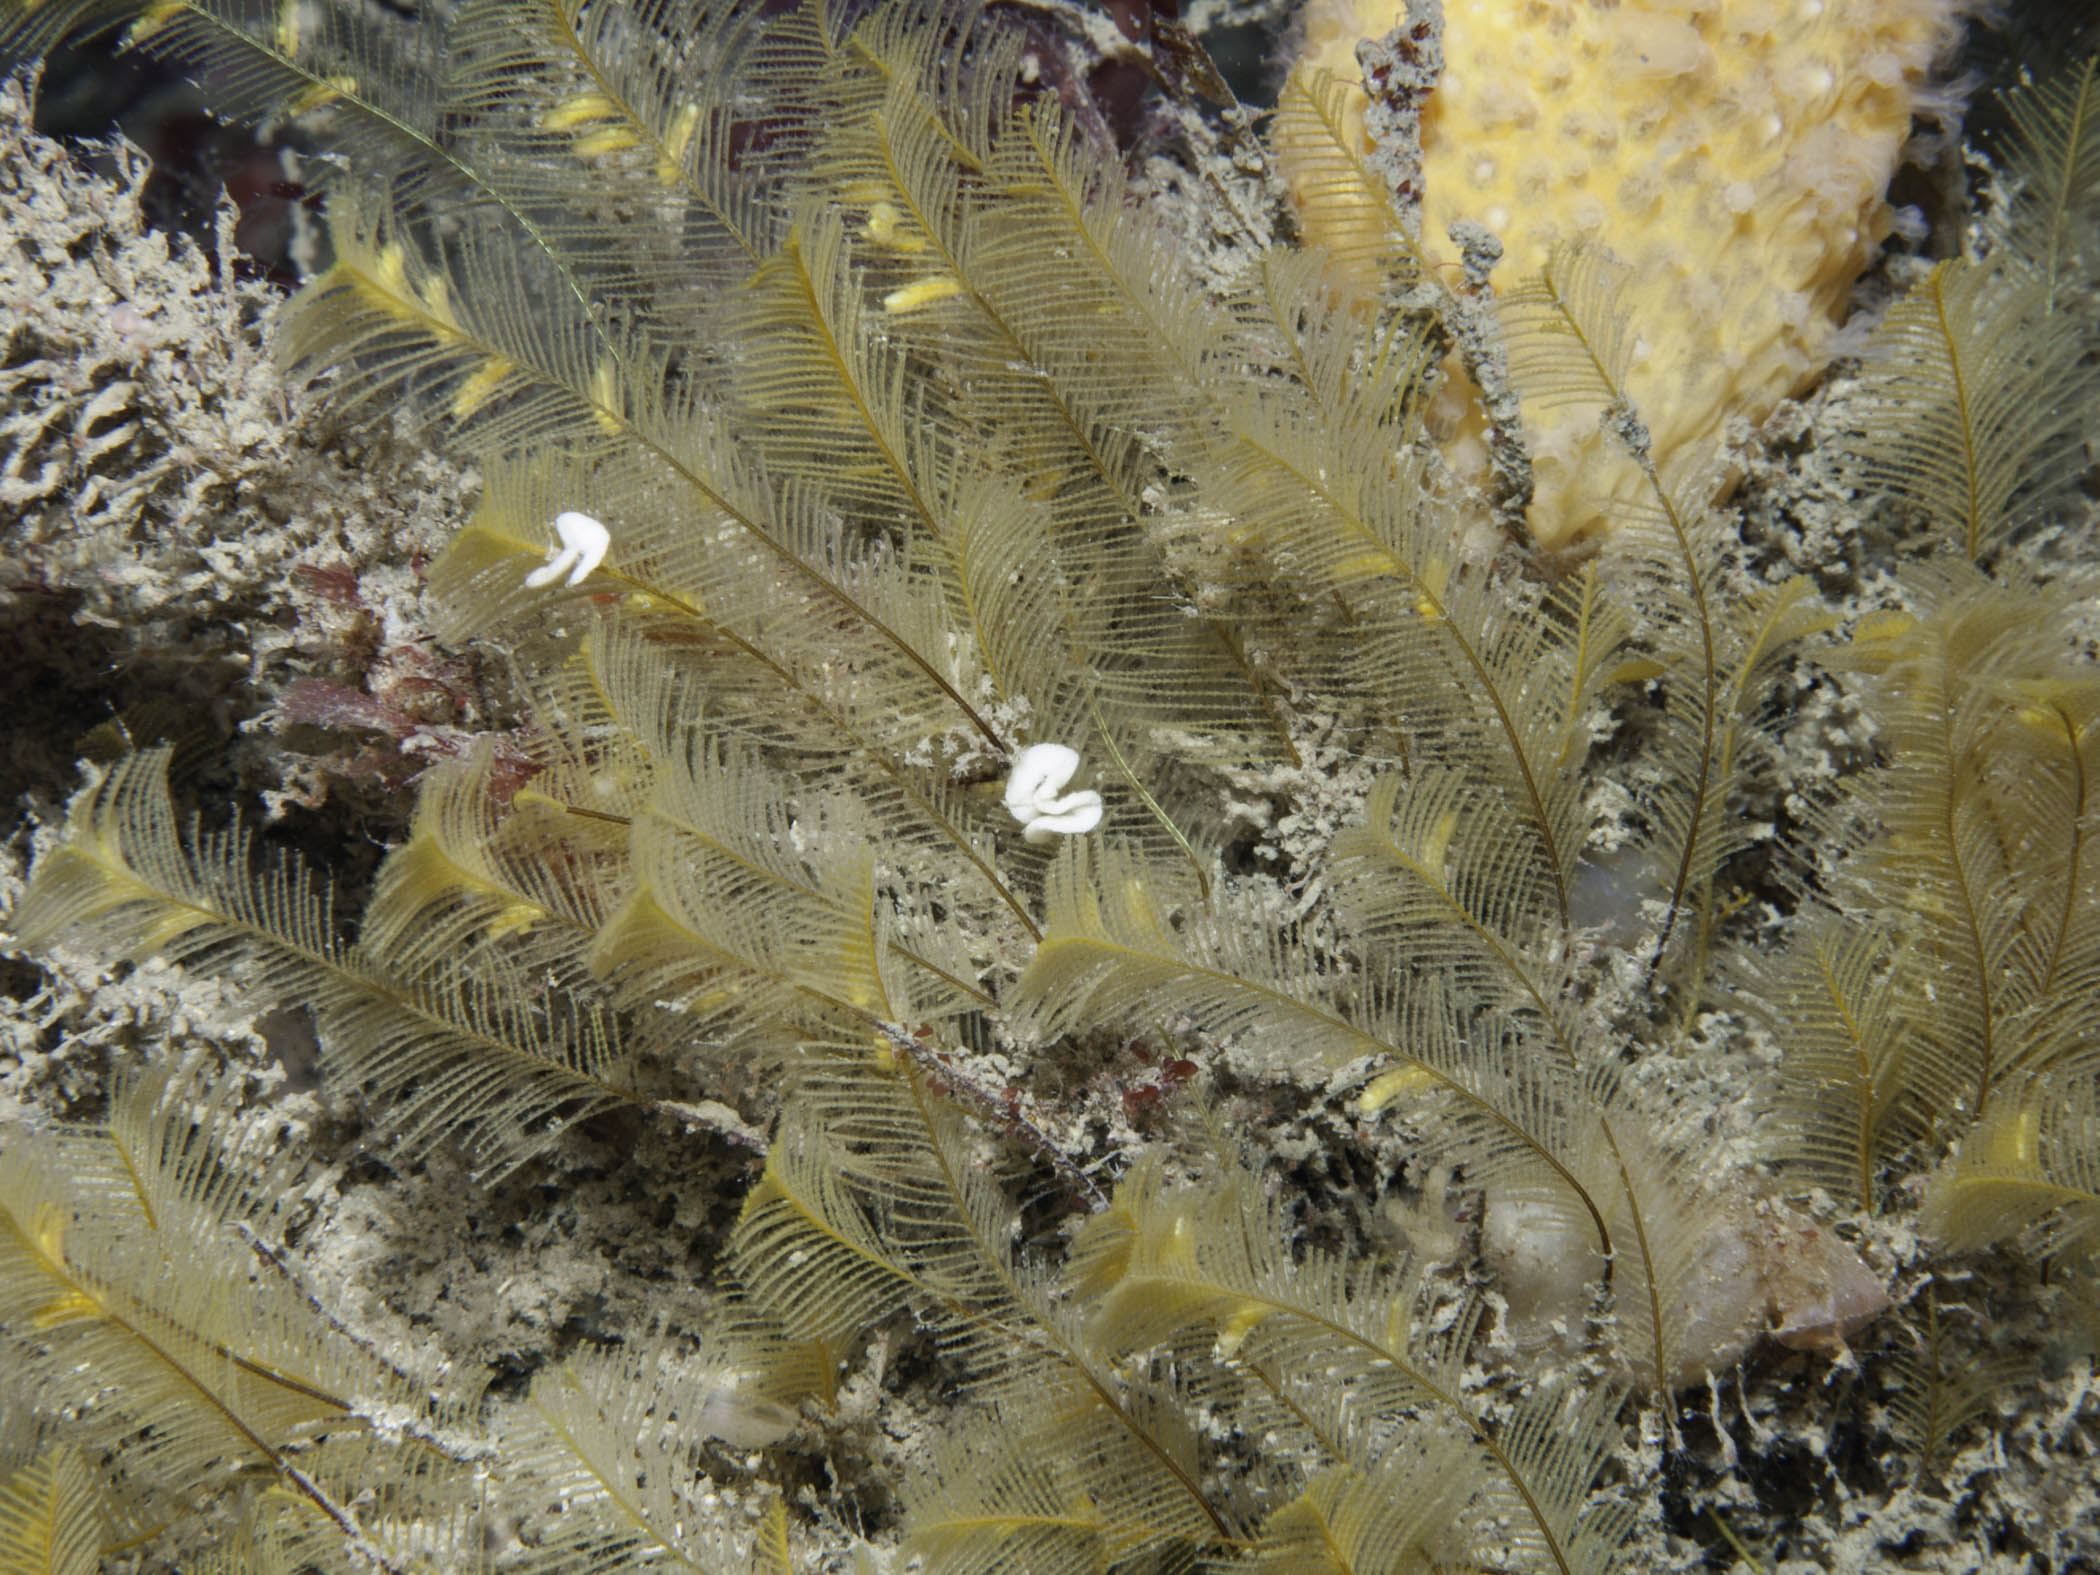 image: Aglaophenia tubulifera. Rathlin Island, 2005.